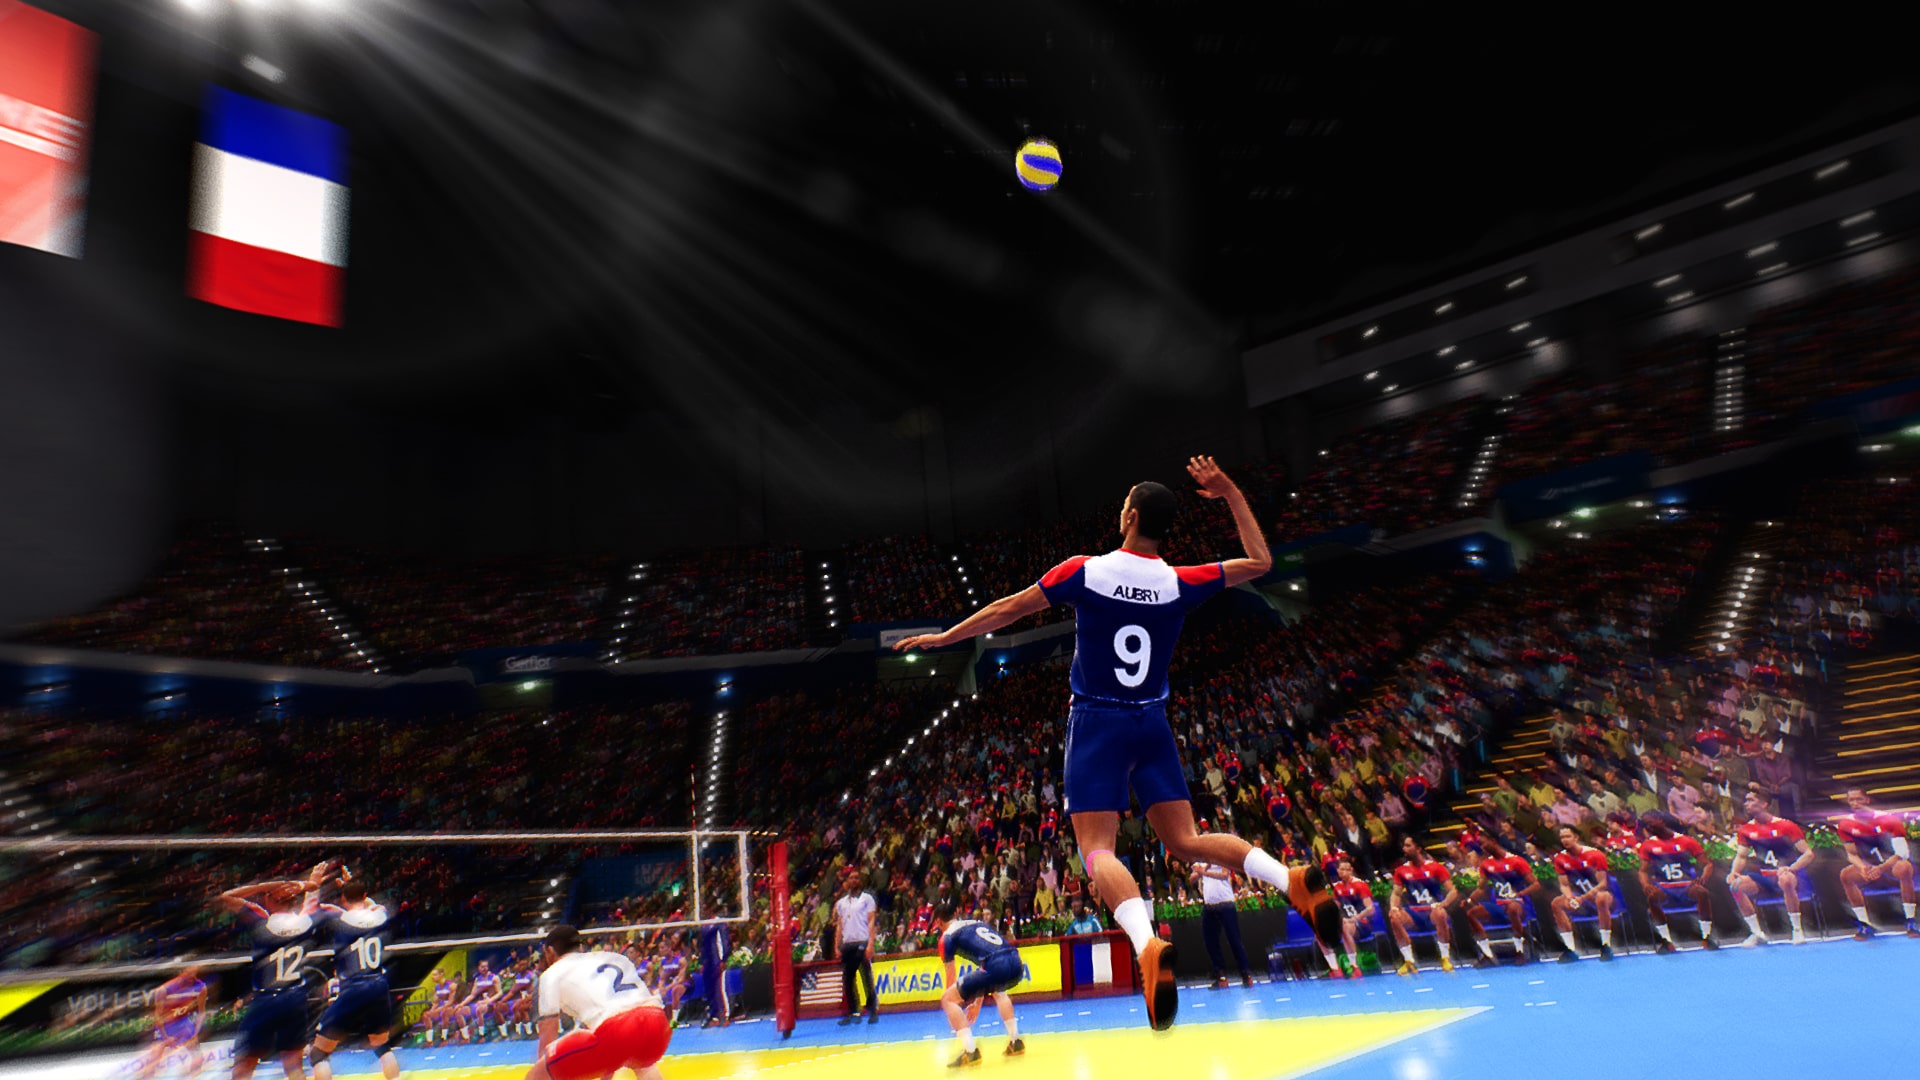 Spike Volleyball è Disponibile Guarda Il Trailer Di Lancio Gamesblog